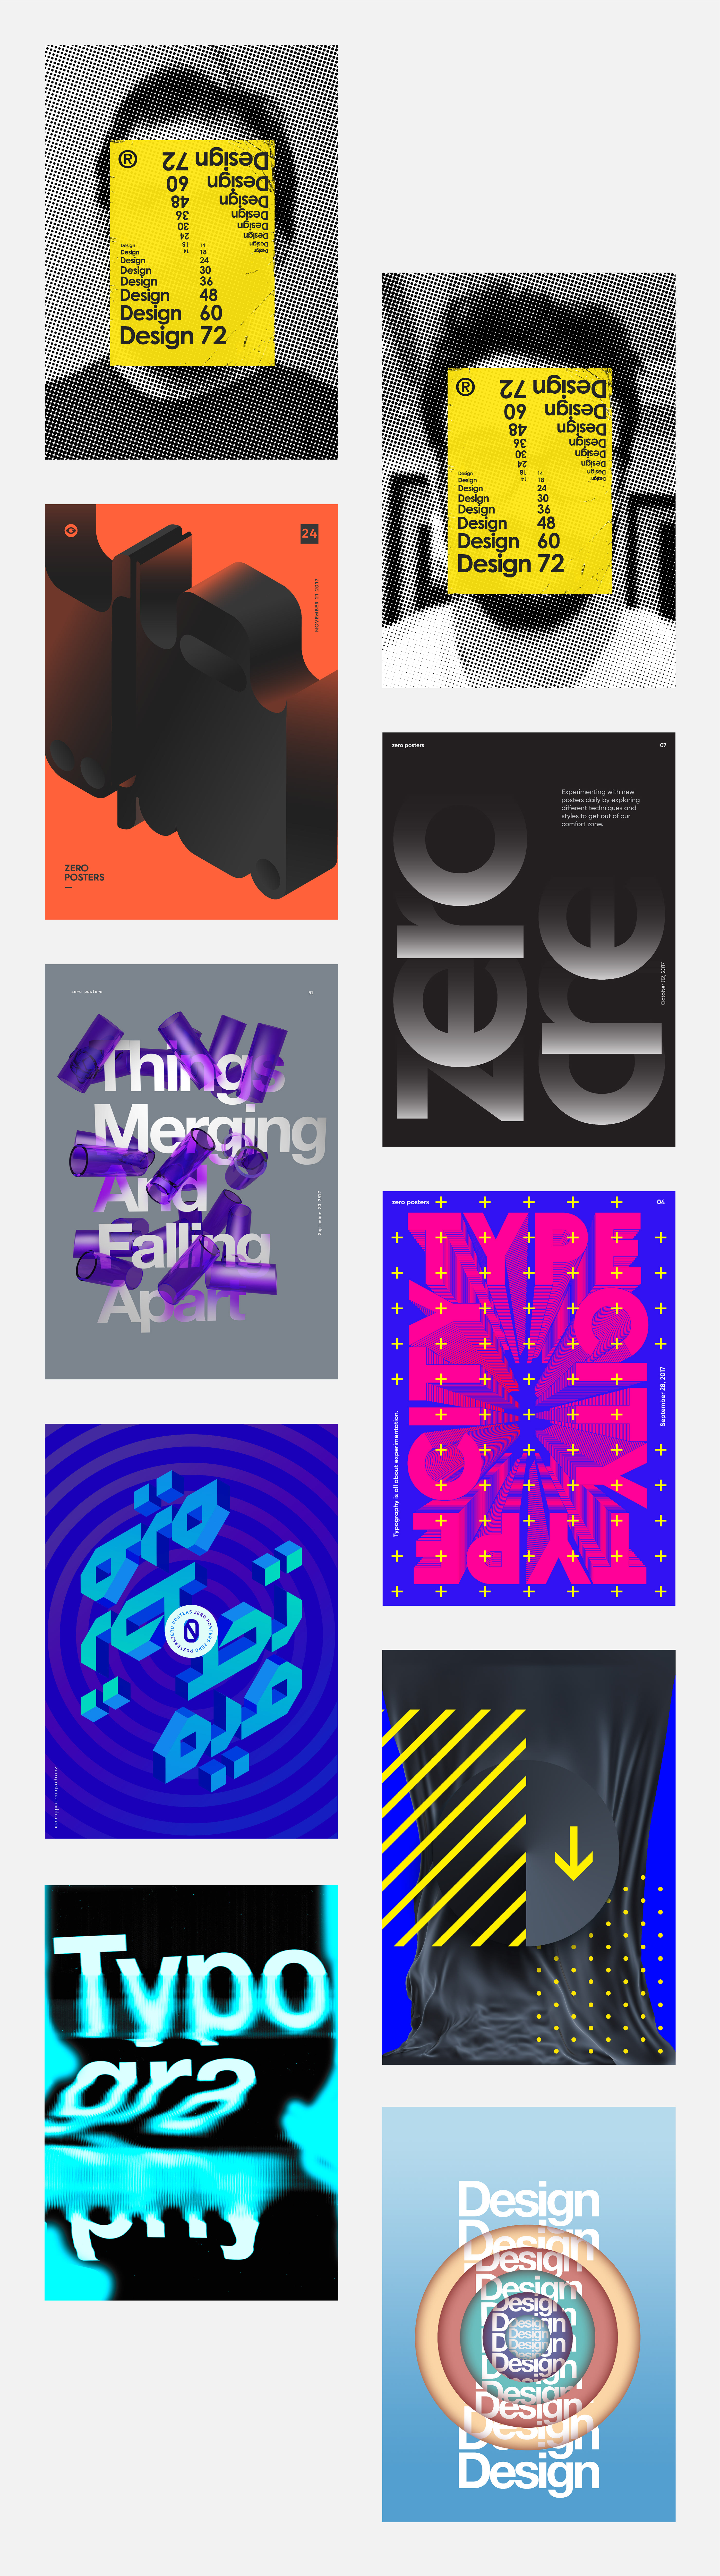 Diseños experimental: Zero Posters Vol.1